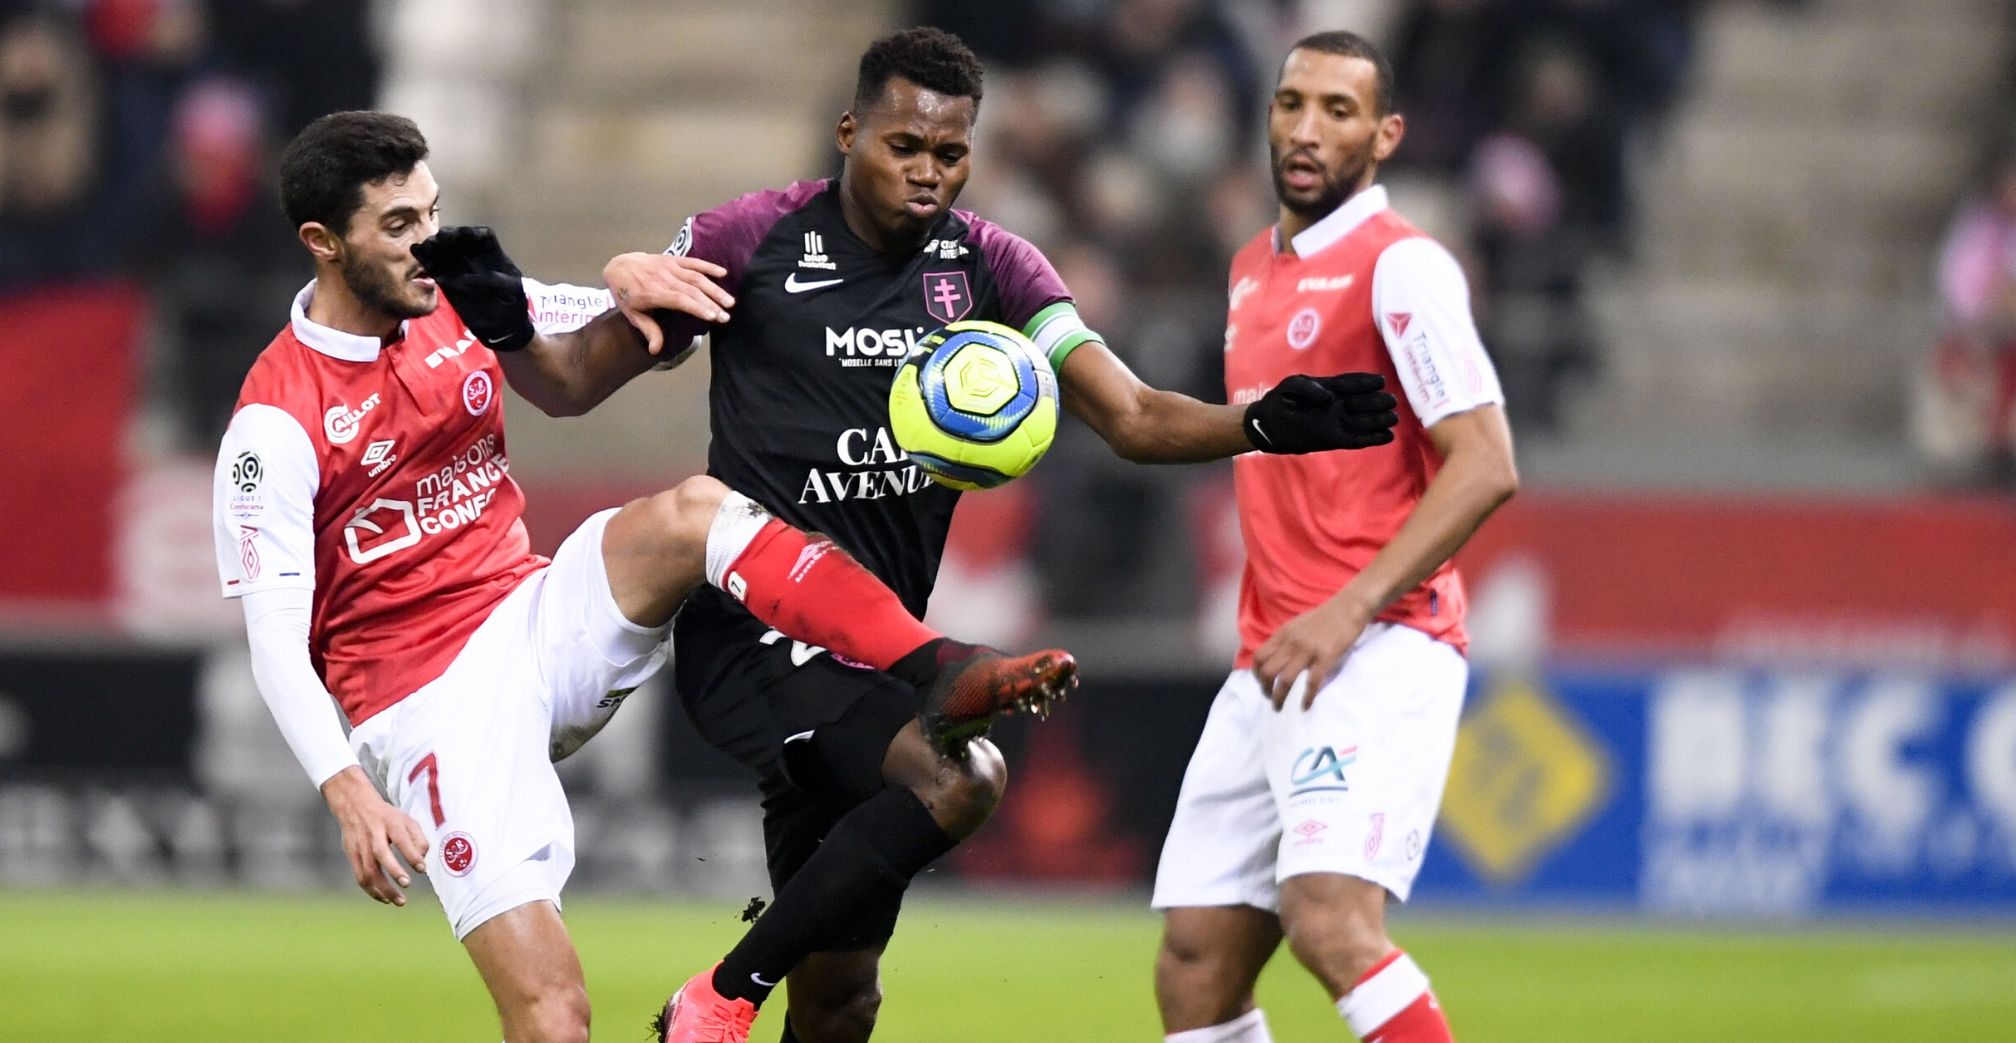 Ligue 1 Conforama - French Football League